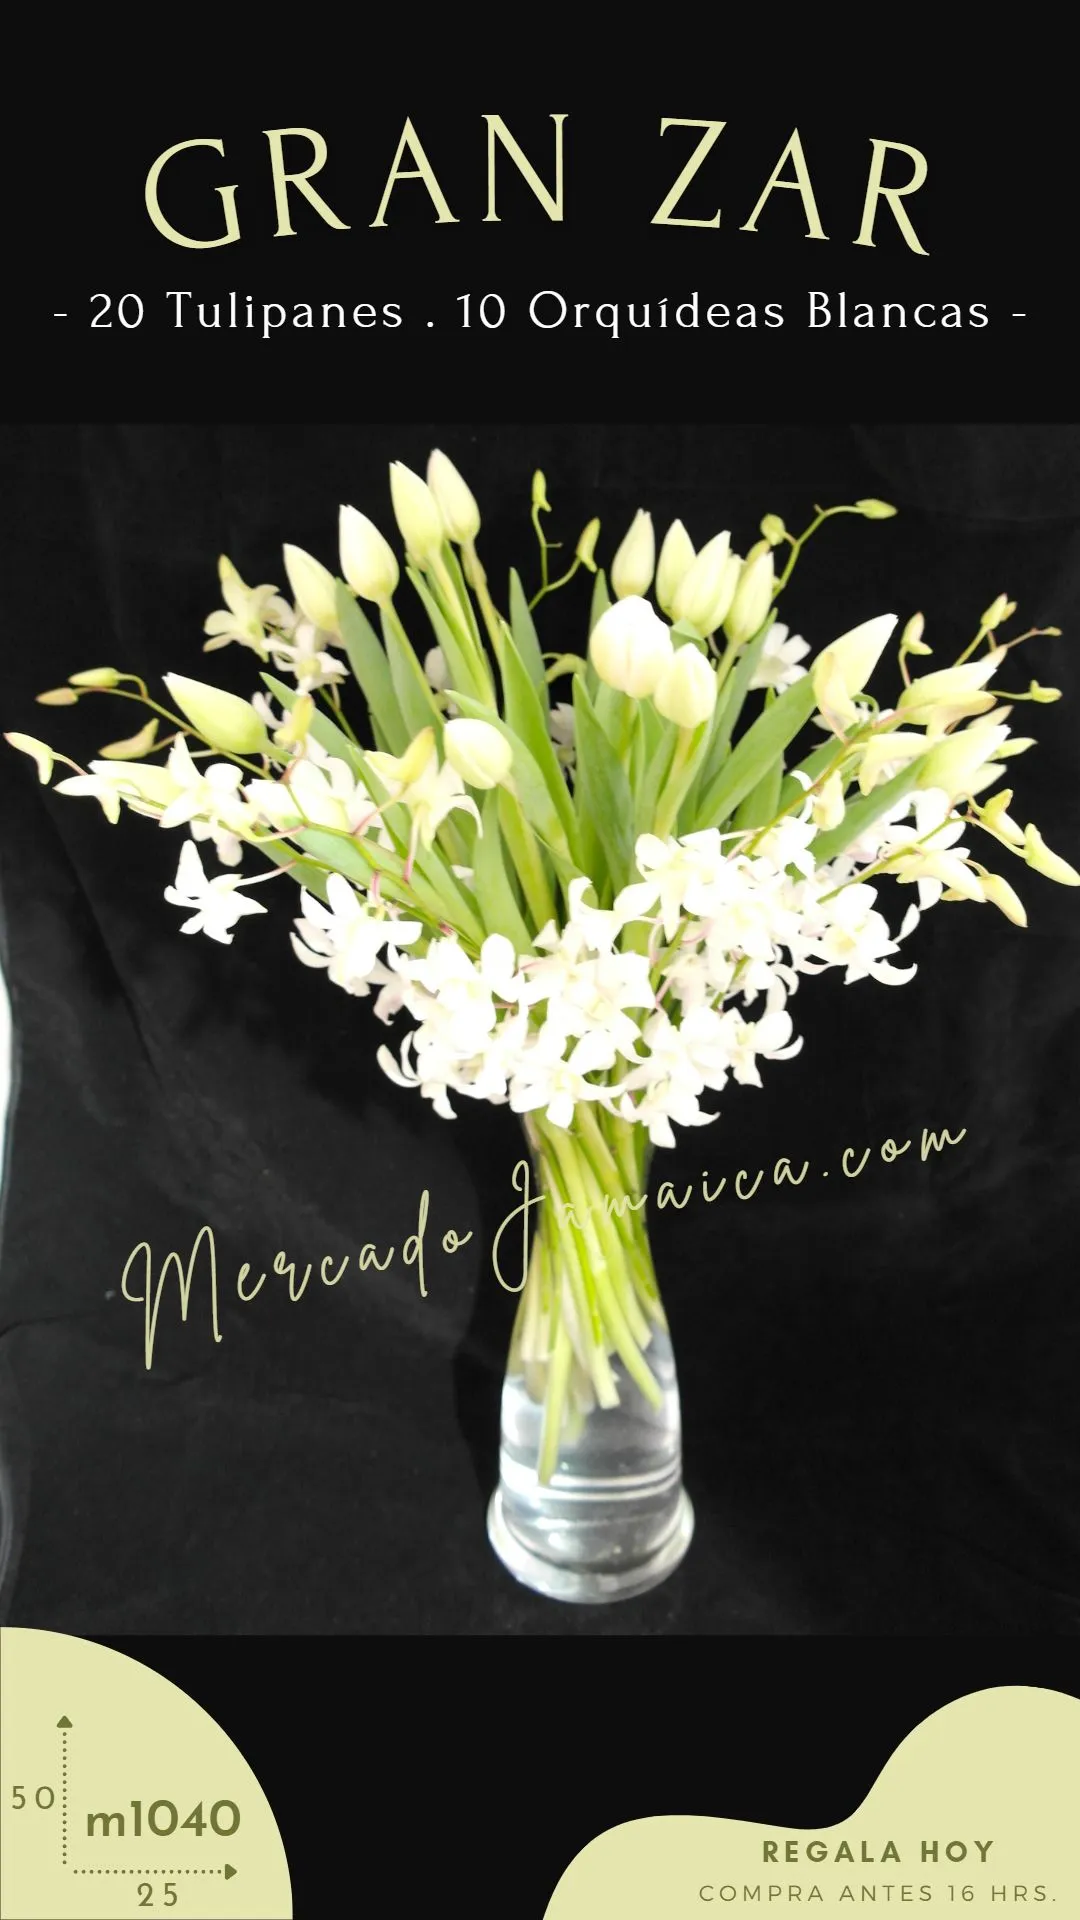 Arreglo con orquideas y tulipanes blancos gran zar !